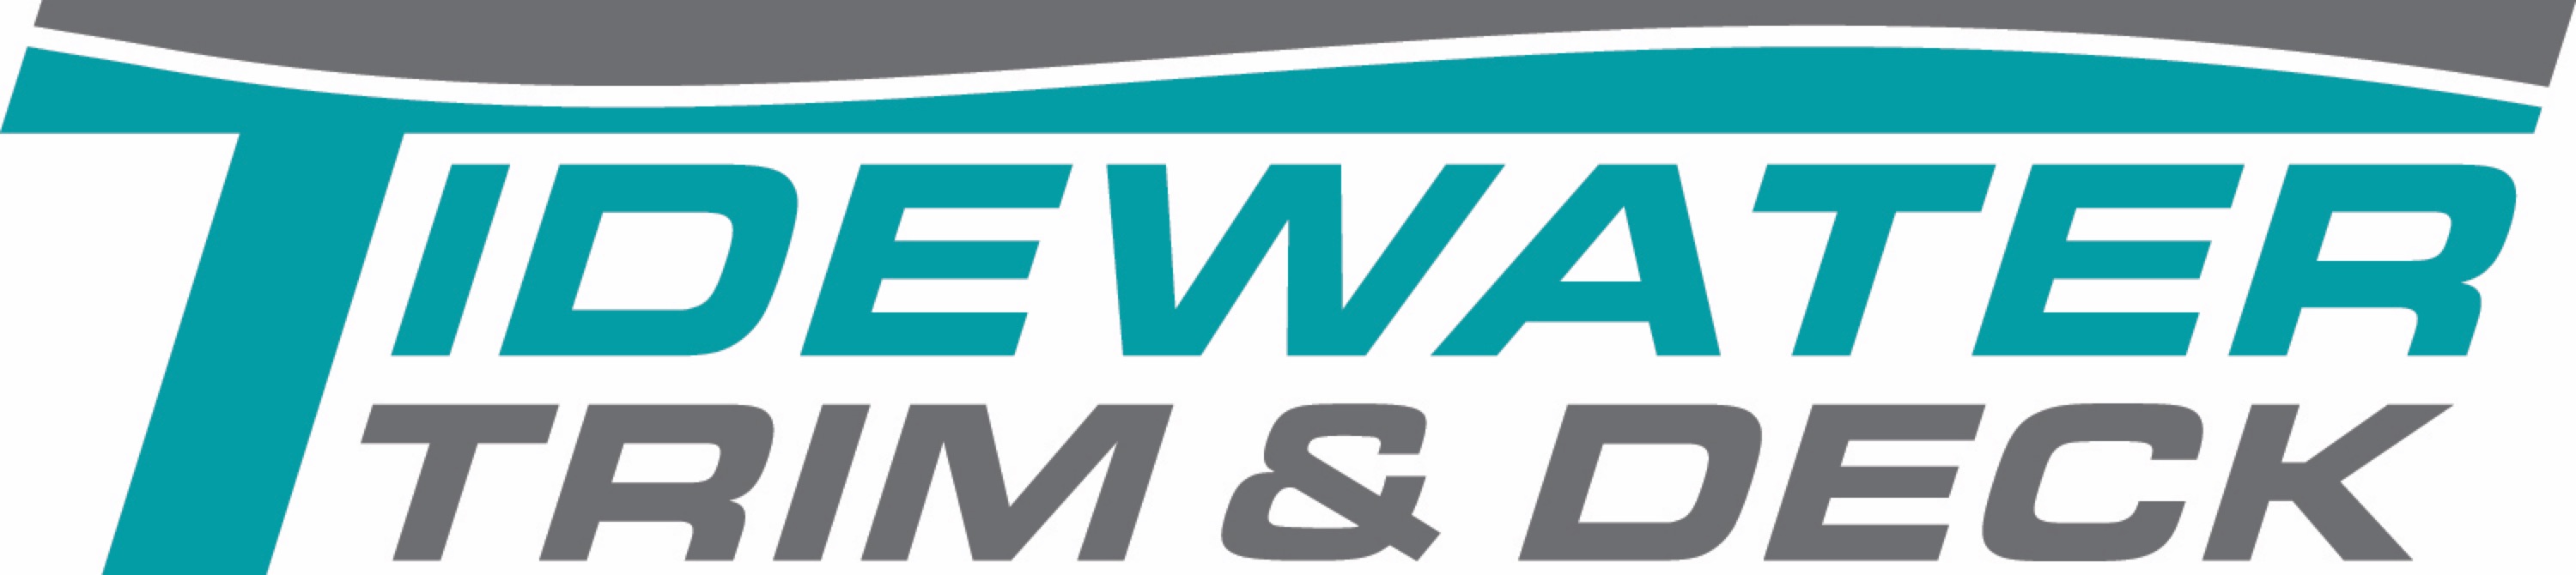 Tidewater Trim and Deck, LLC Logo